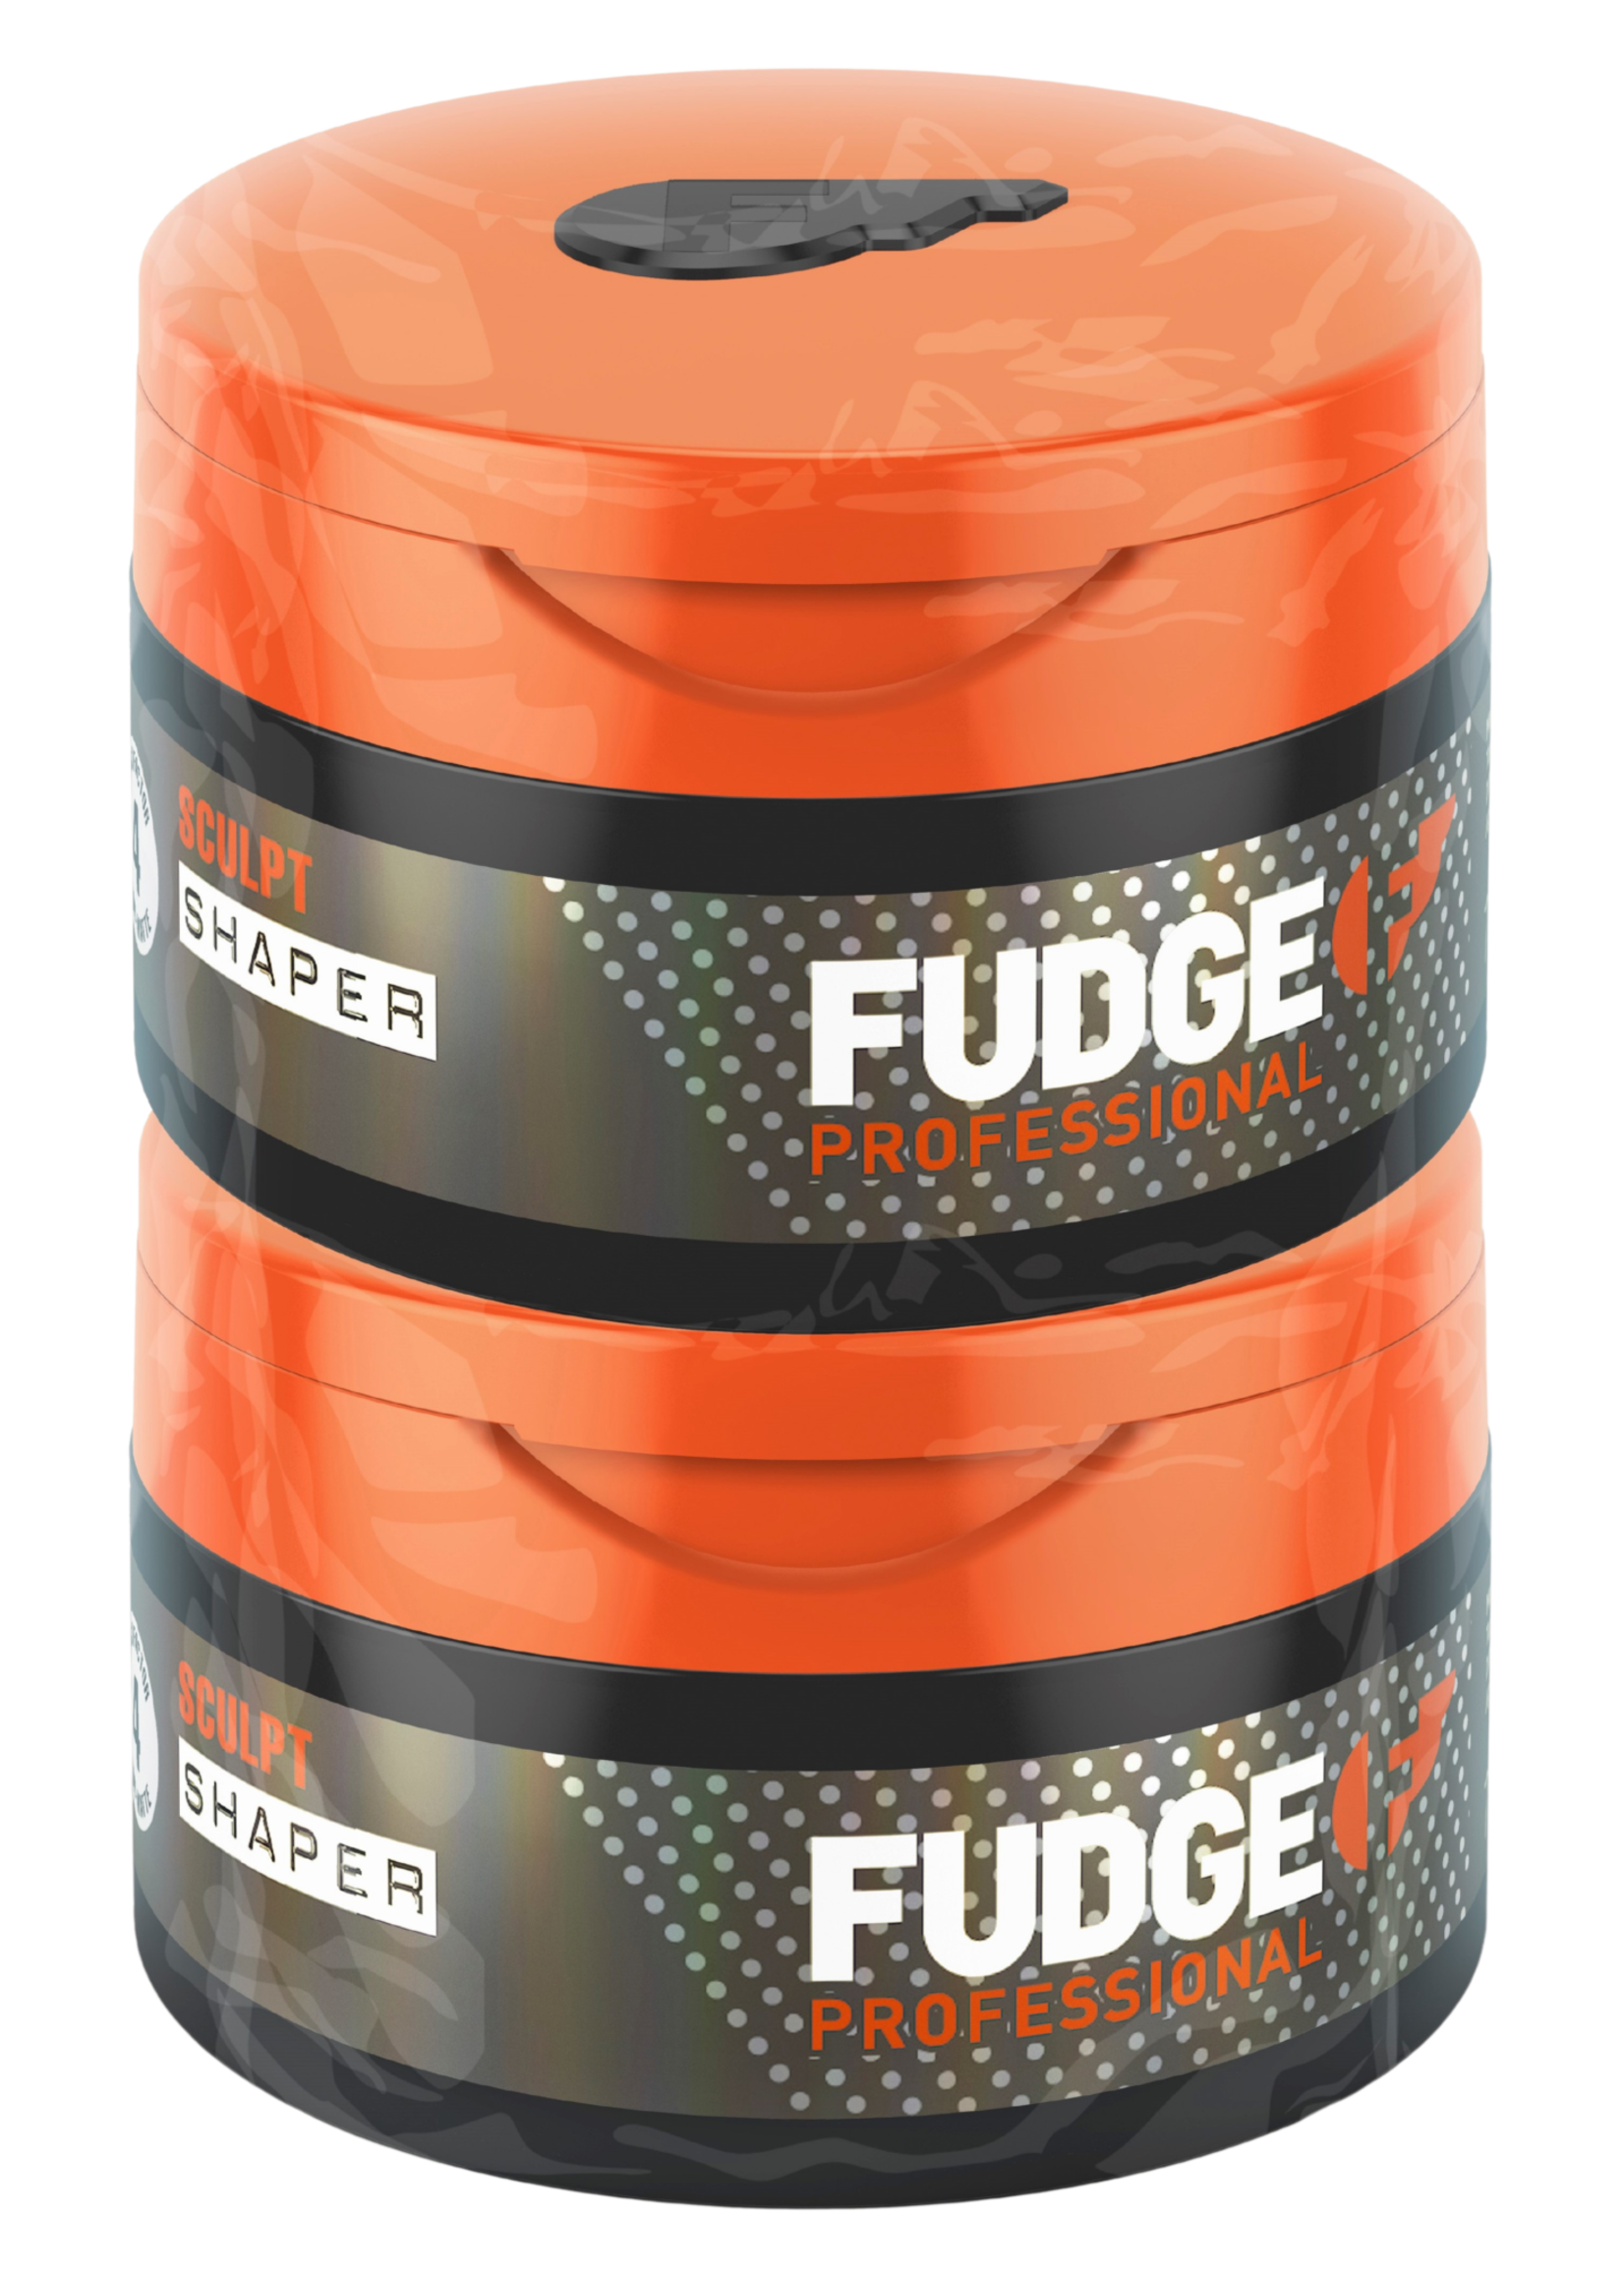 Fudge Fudge Hair Shaper 75g Double Header